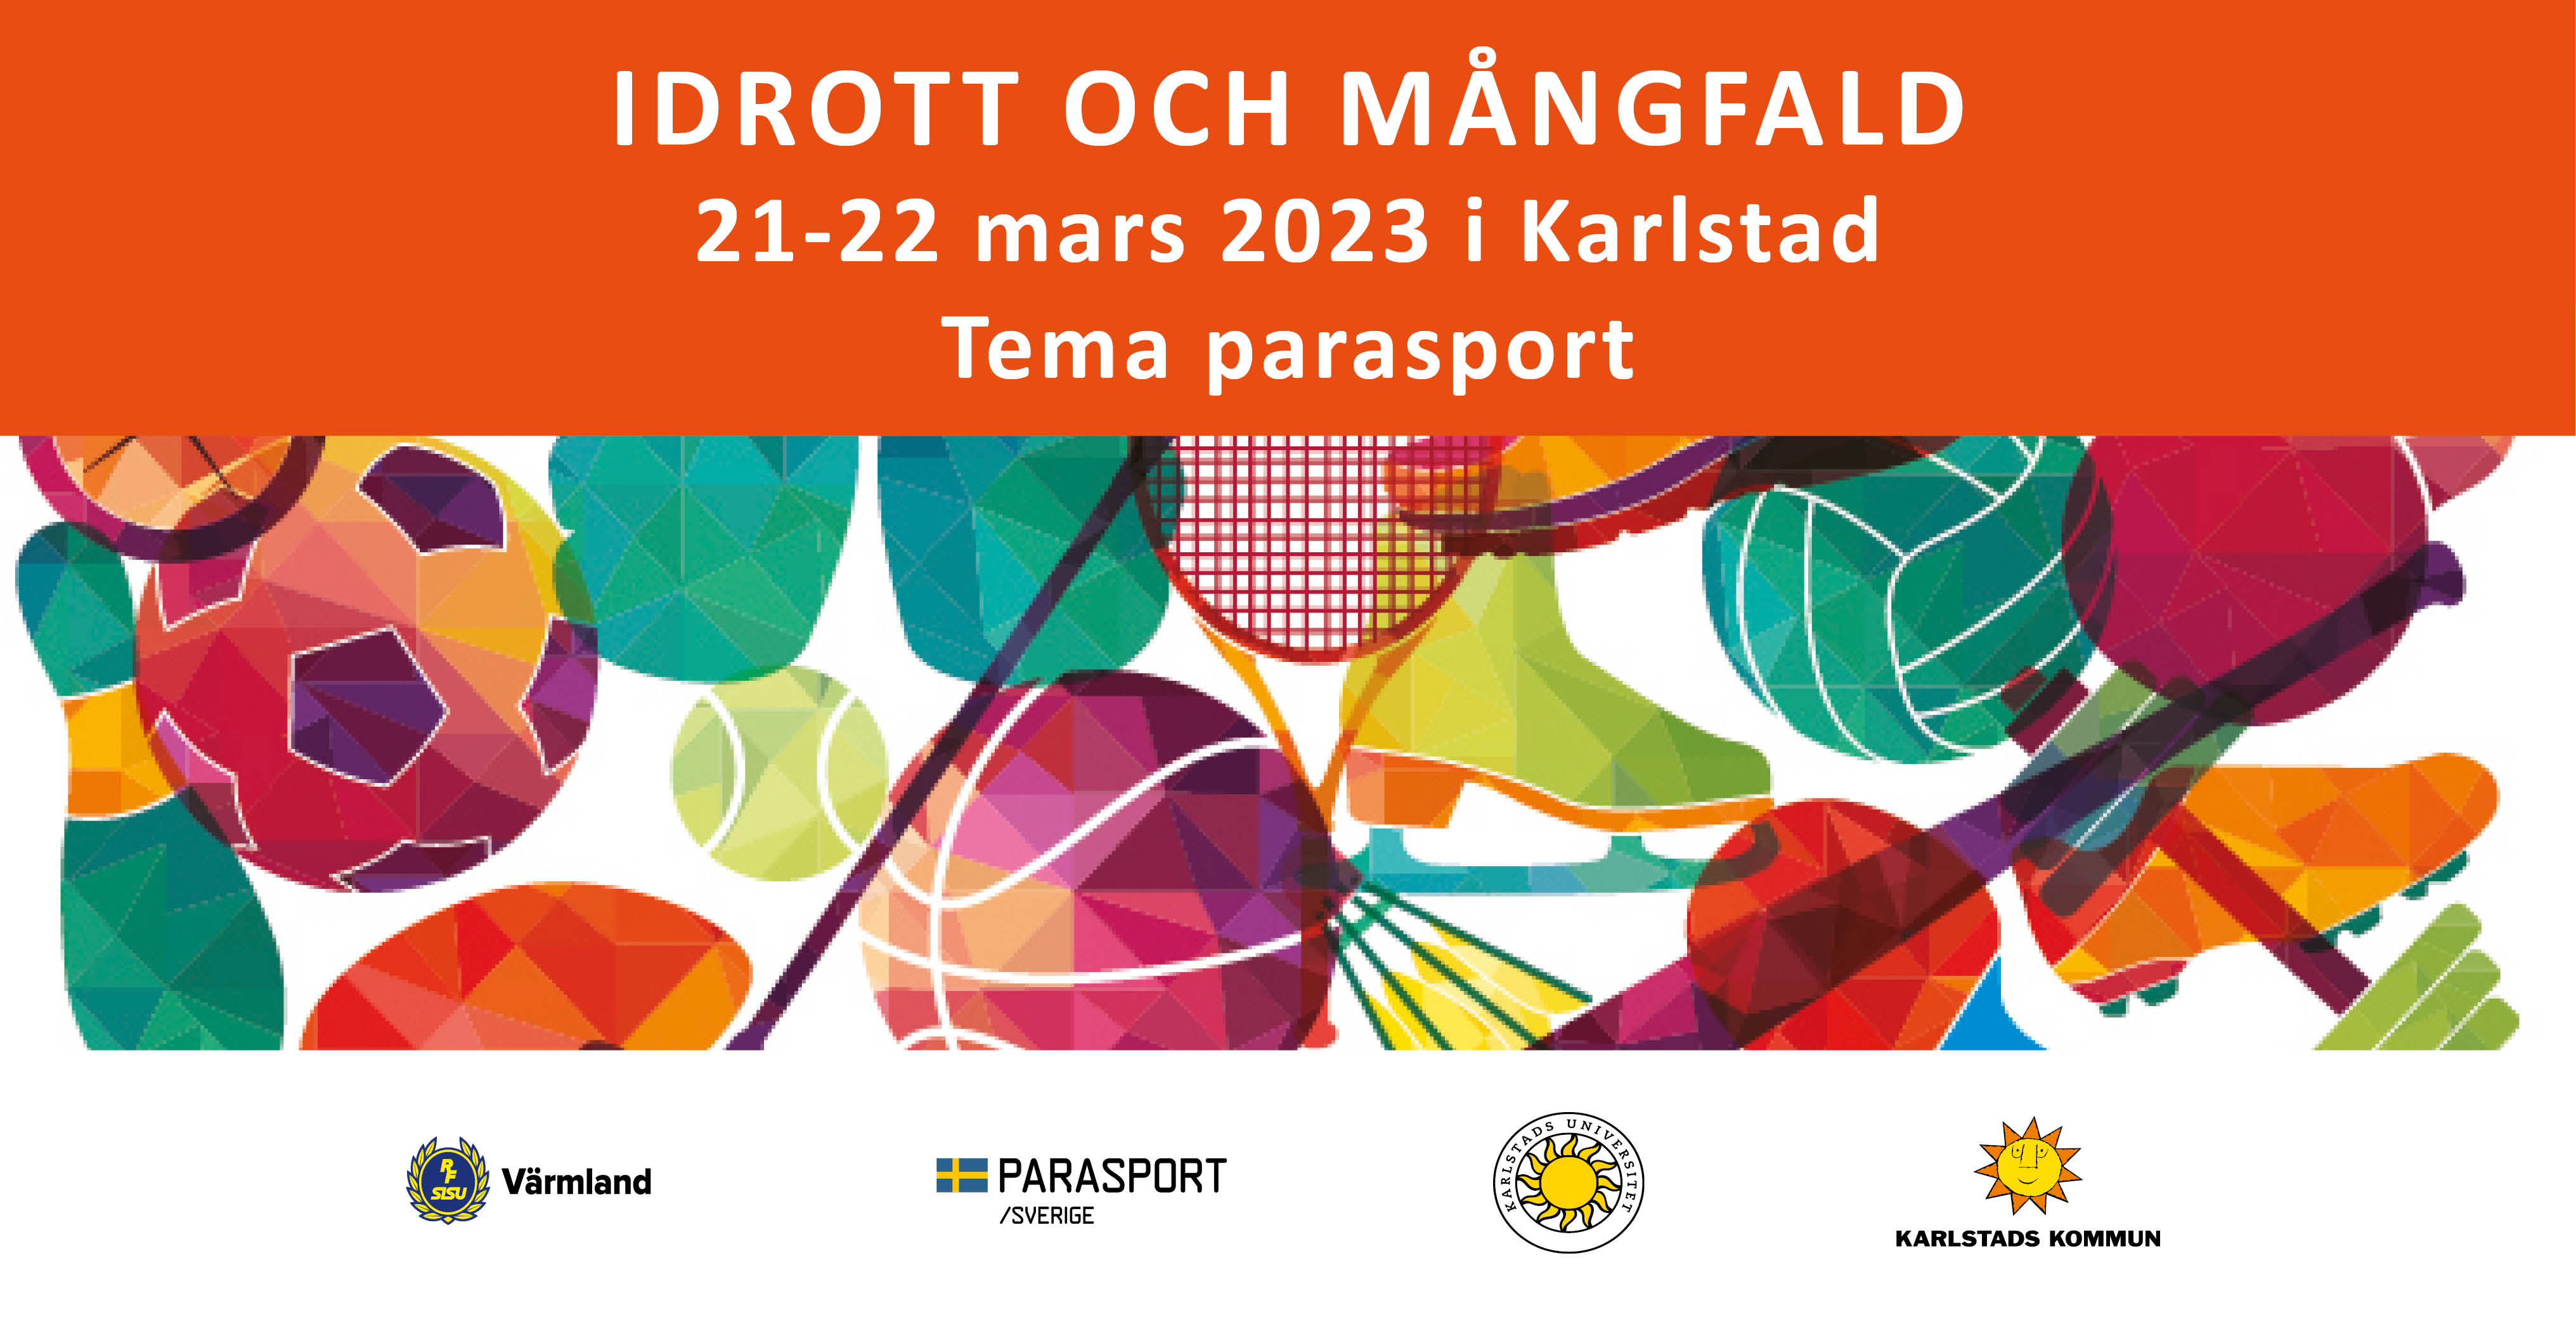 Konferens: Idrott och mångfald 2023 tema parasport, 21-22 mars i Karlstad.